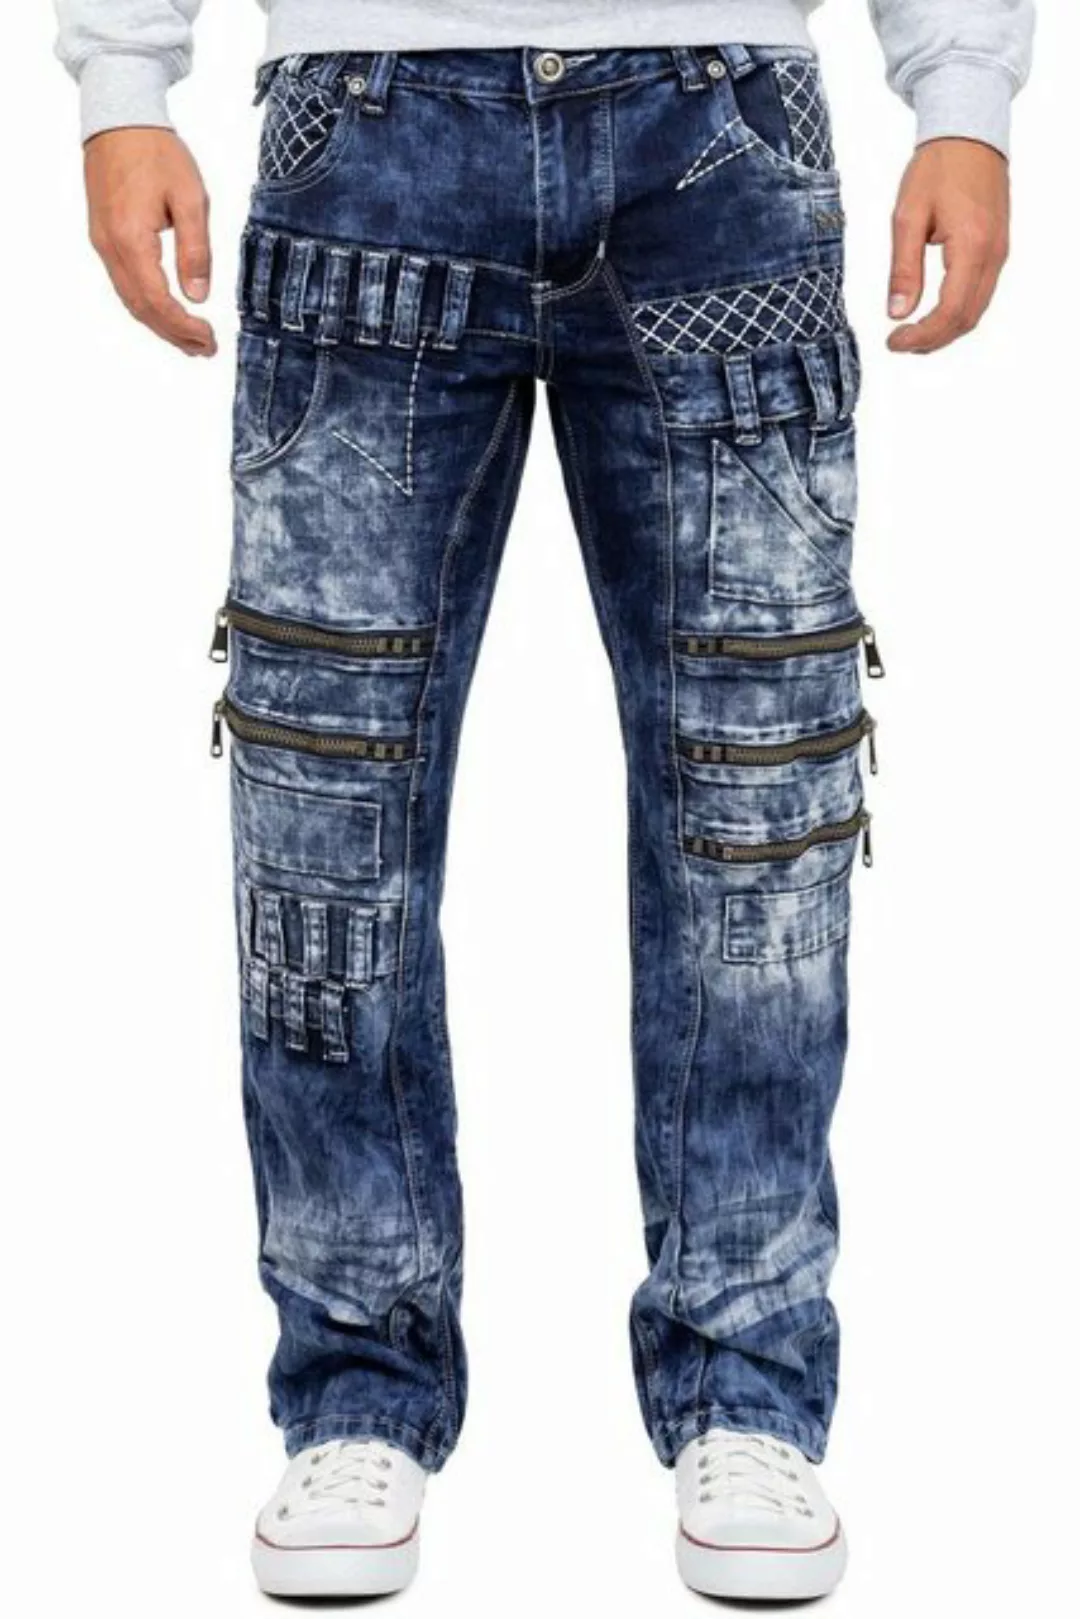 Kosmo Lupo 5-Pocket-Jeans Auffällige Herren Hose BA-KM8006-1 Schwarz W36/L3 günstig online kaufen